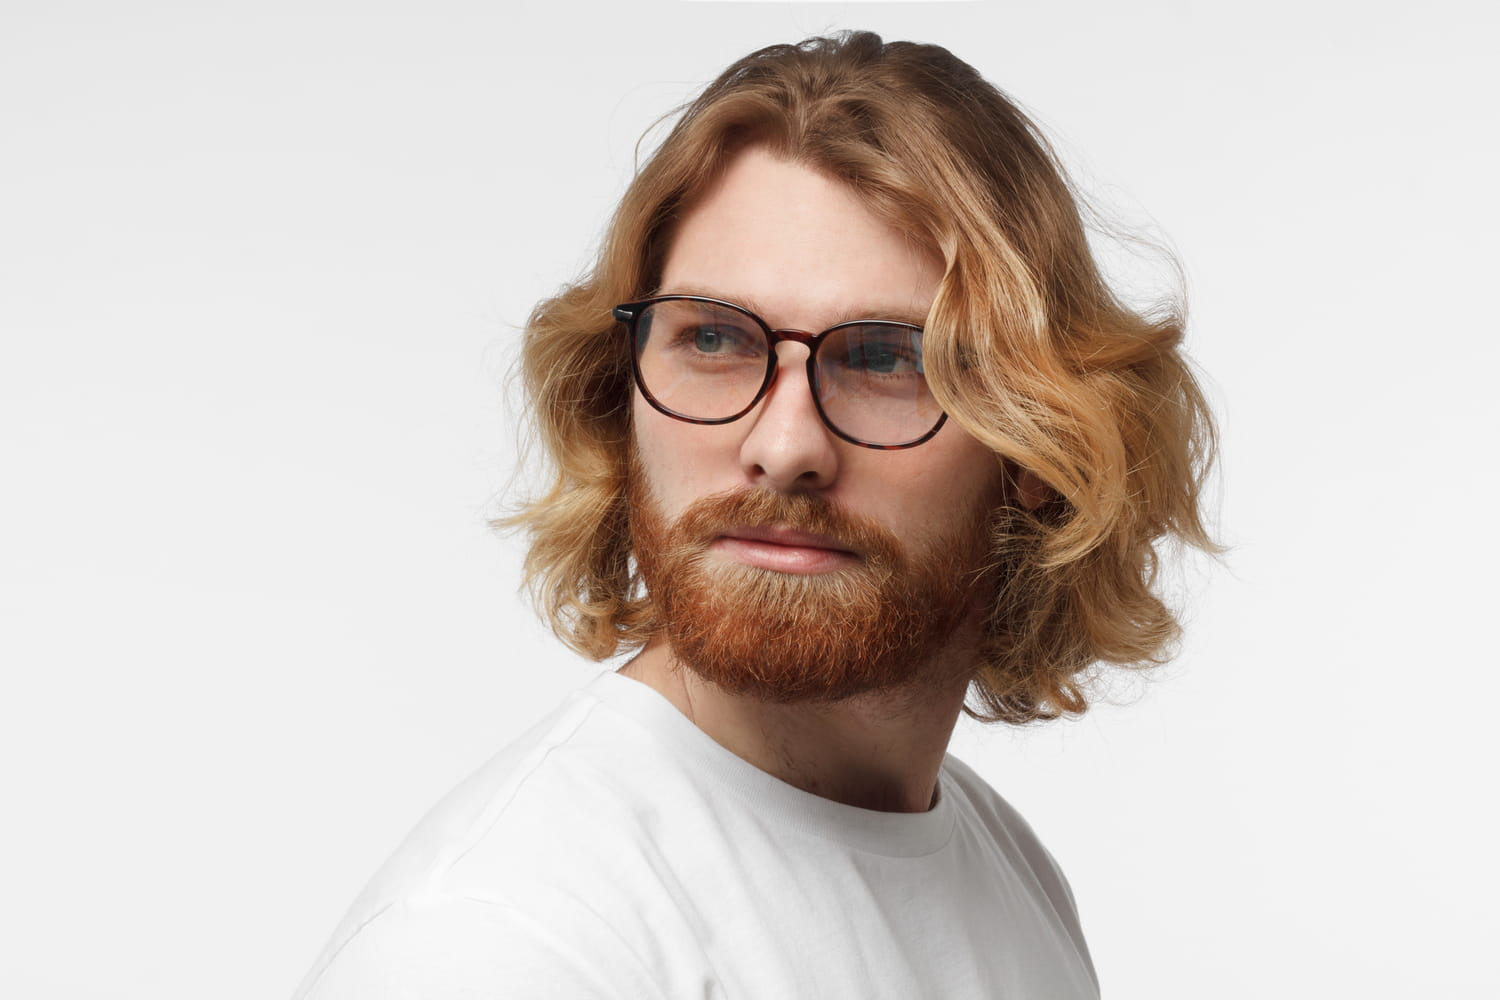 Cheveux Mi-Longs Homme : Coiffures Et Conseils Pour Les Entretenir pour Coupe Cheveux Homme Mi Long tutoriel 